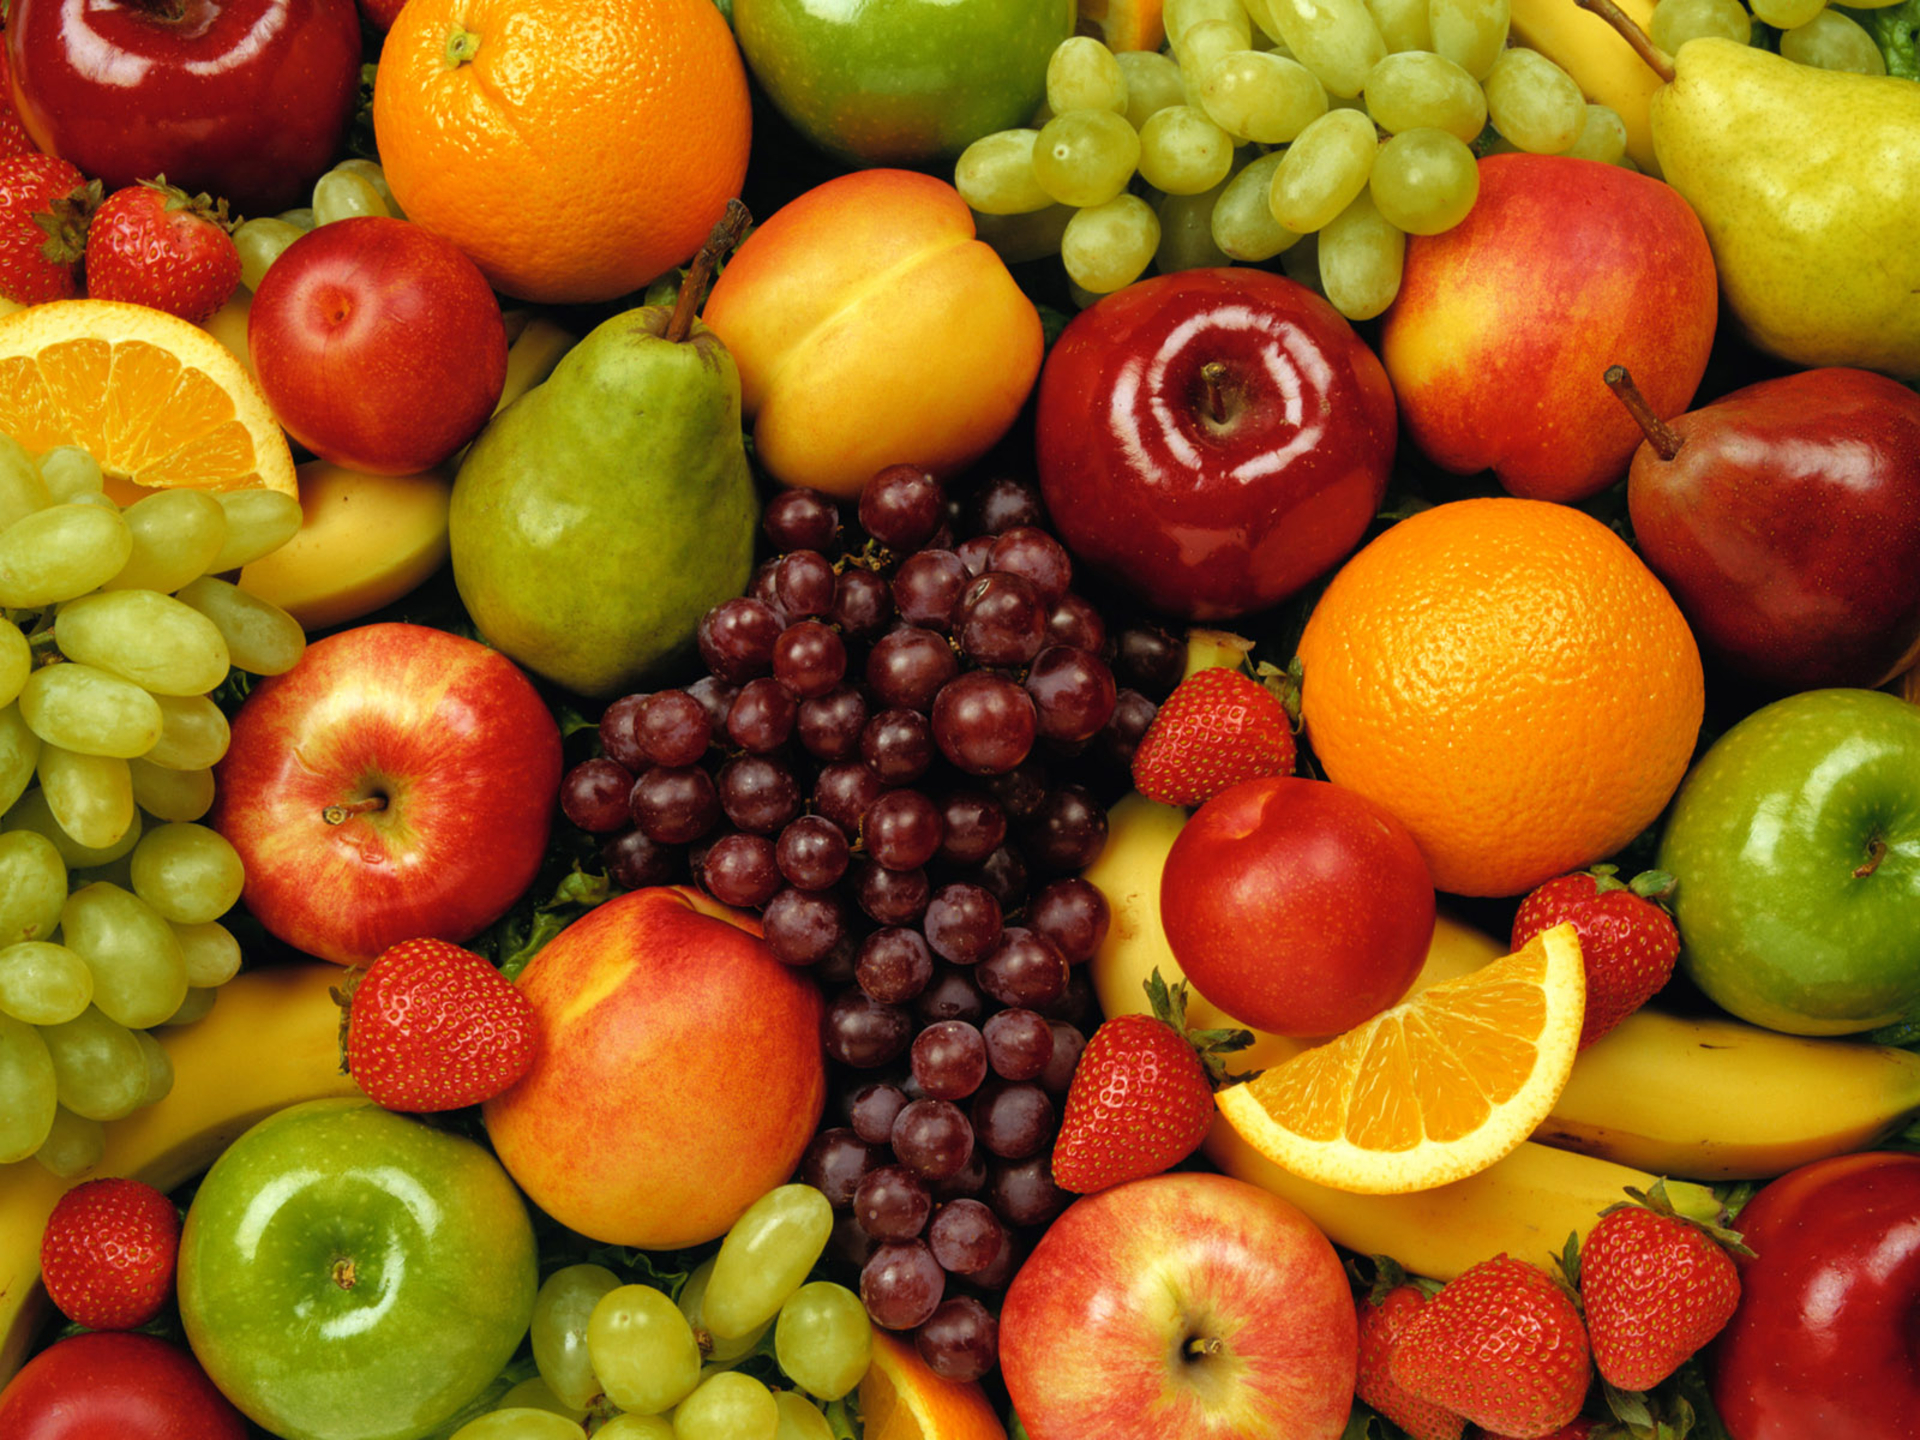 271932 免費下載壁紙 食物, 水果, 苹果, 葡萄, 橙色（水果）, 草莓 屏保和圖片